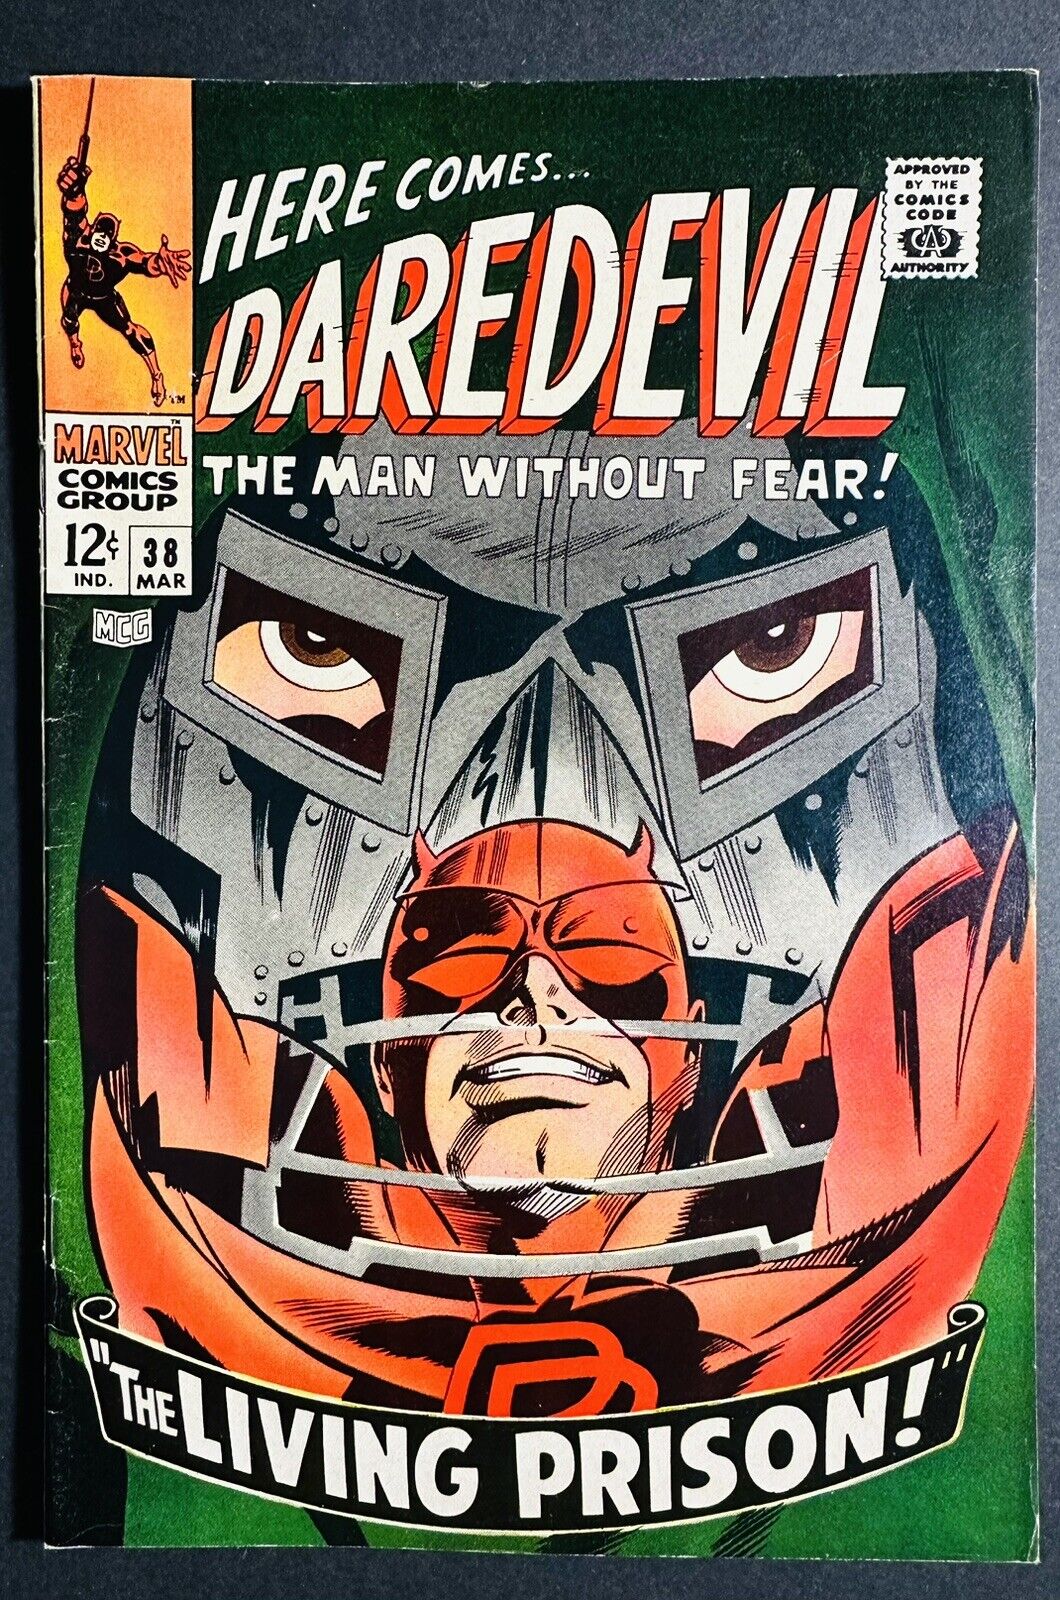 Daredevil #38 Marvel Comics 1968 FN+ Classic Doctor Doom Cover NICE